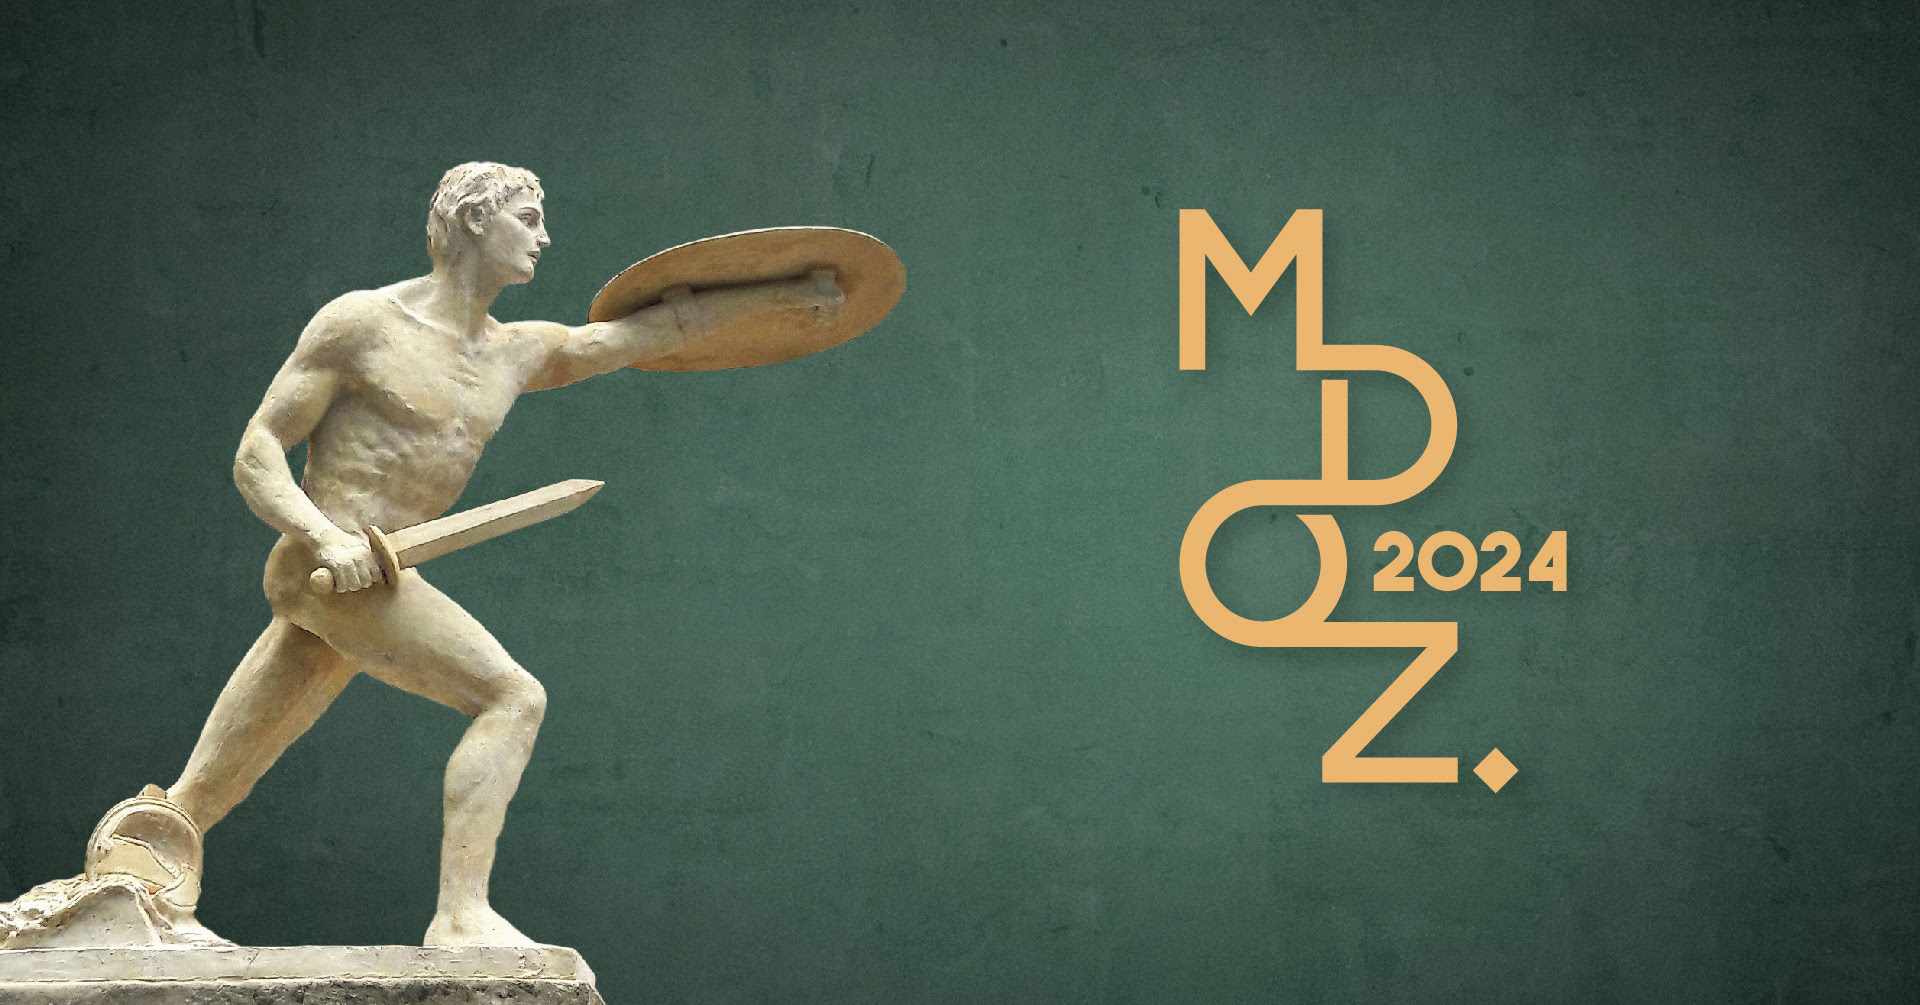 rzeźba przedstawiająca nagiego wojownika trzymającego w prawym ręku miecz a w lewym tarczę oraz napis MDOZ 2024 na zielony tle